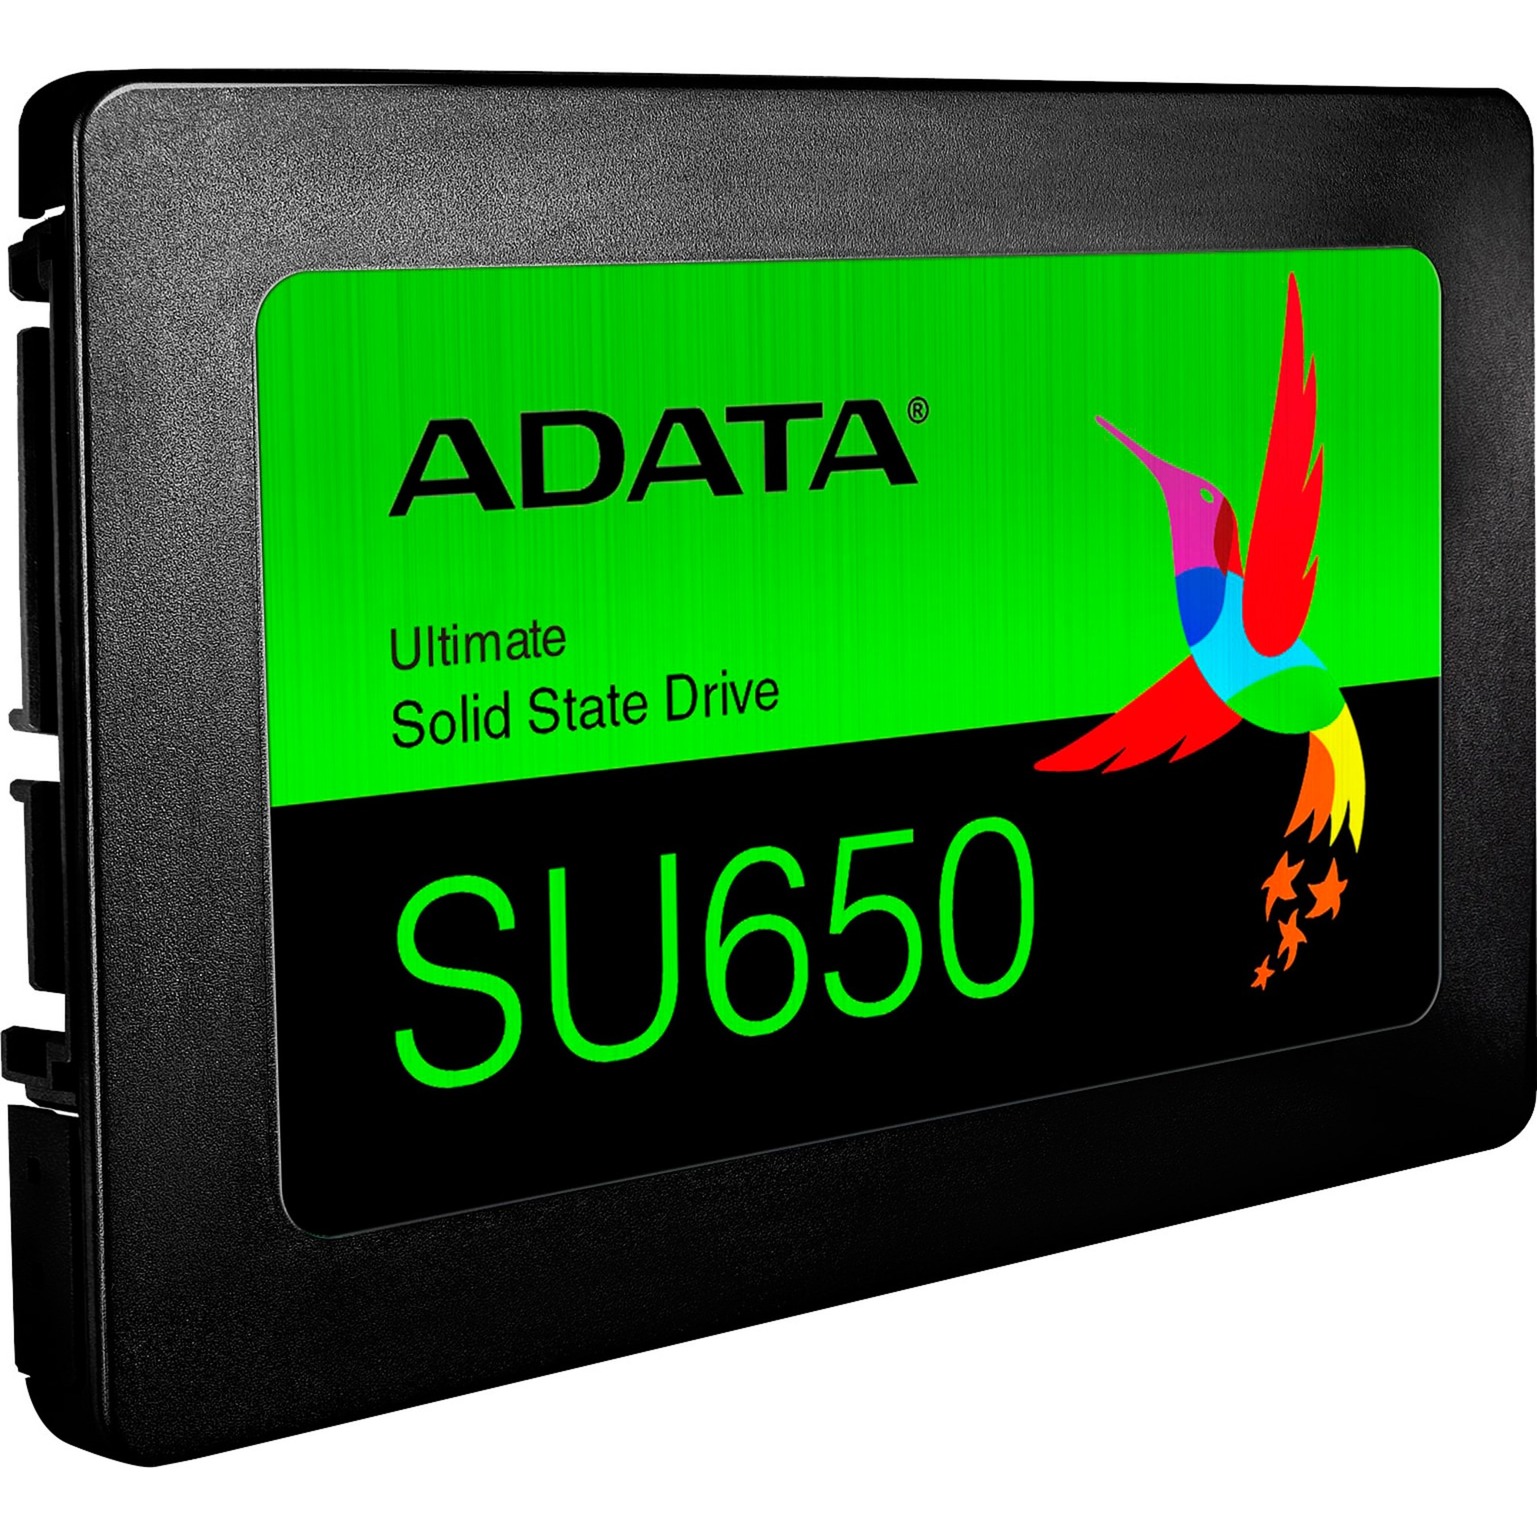 Image of Alternate - Ultimate SU650 256 GB, SSD online einkaufen bei Alternate